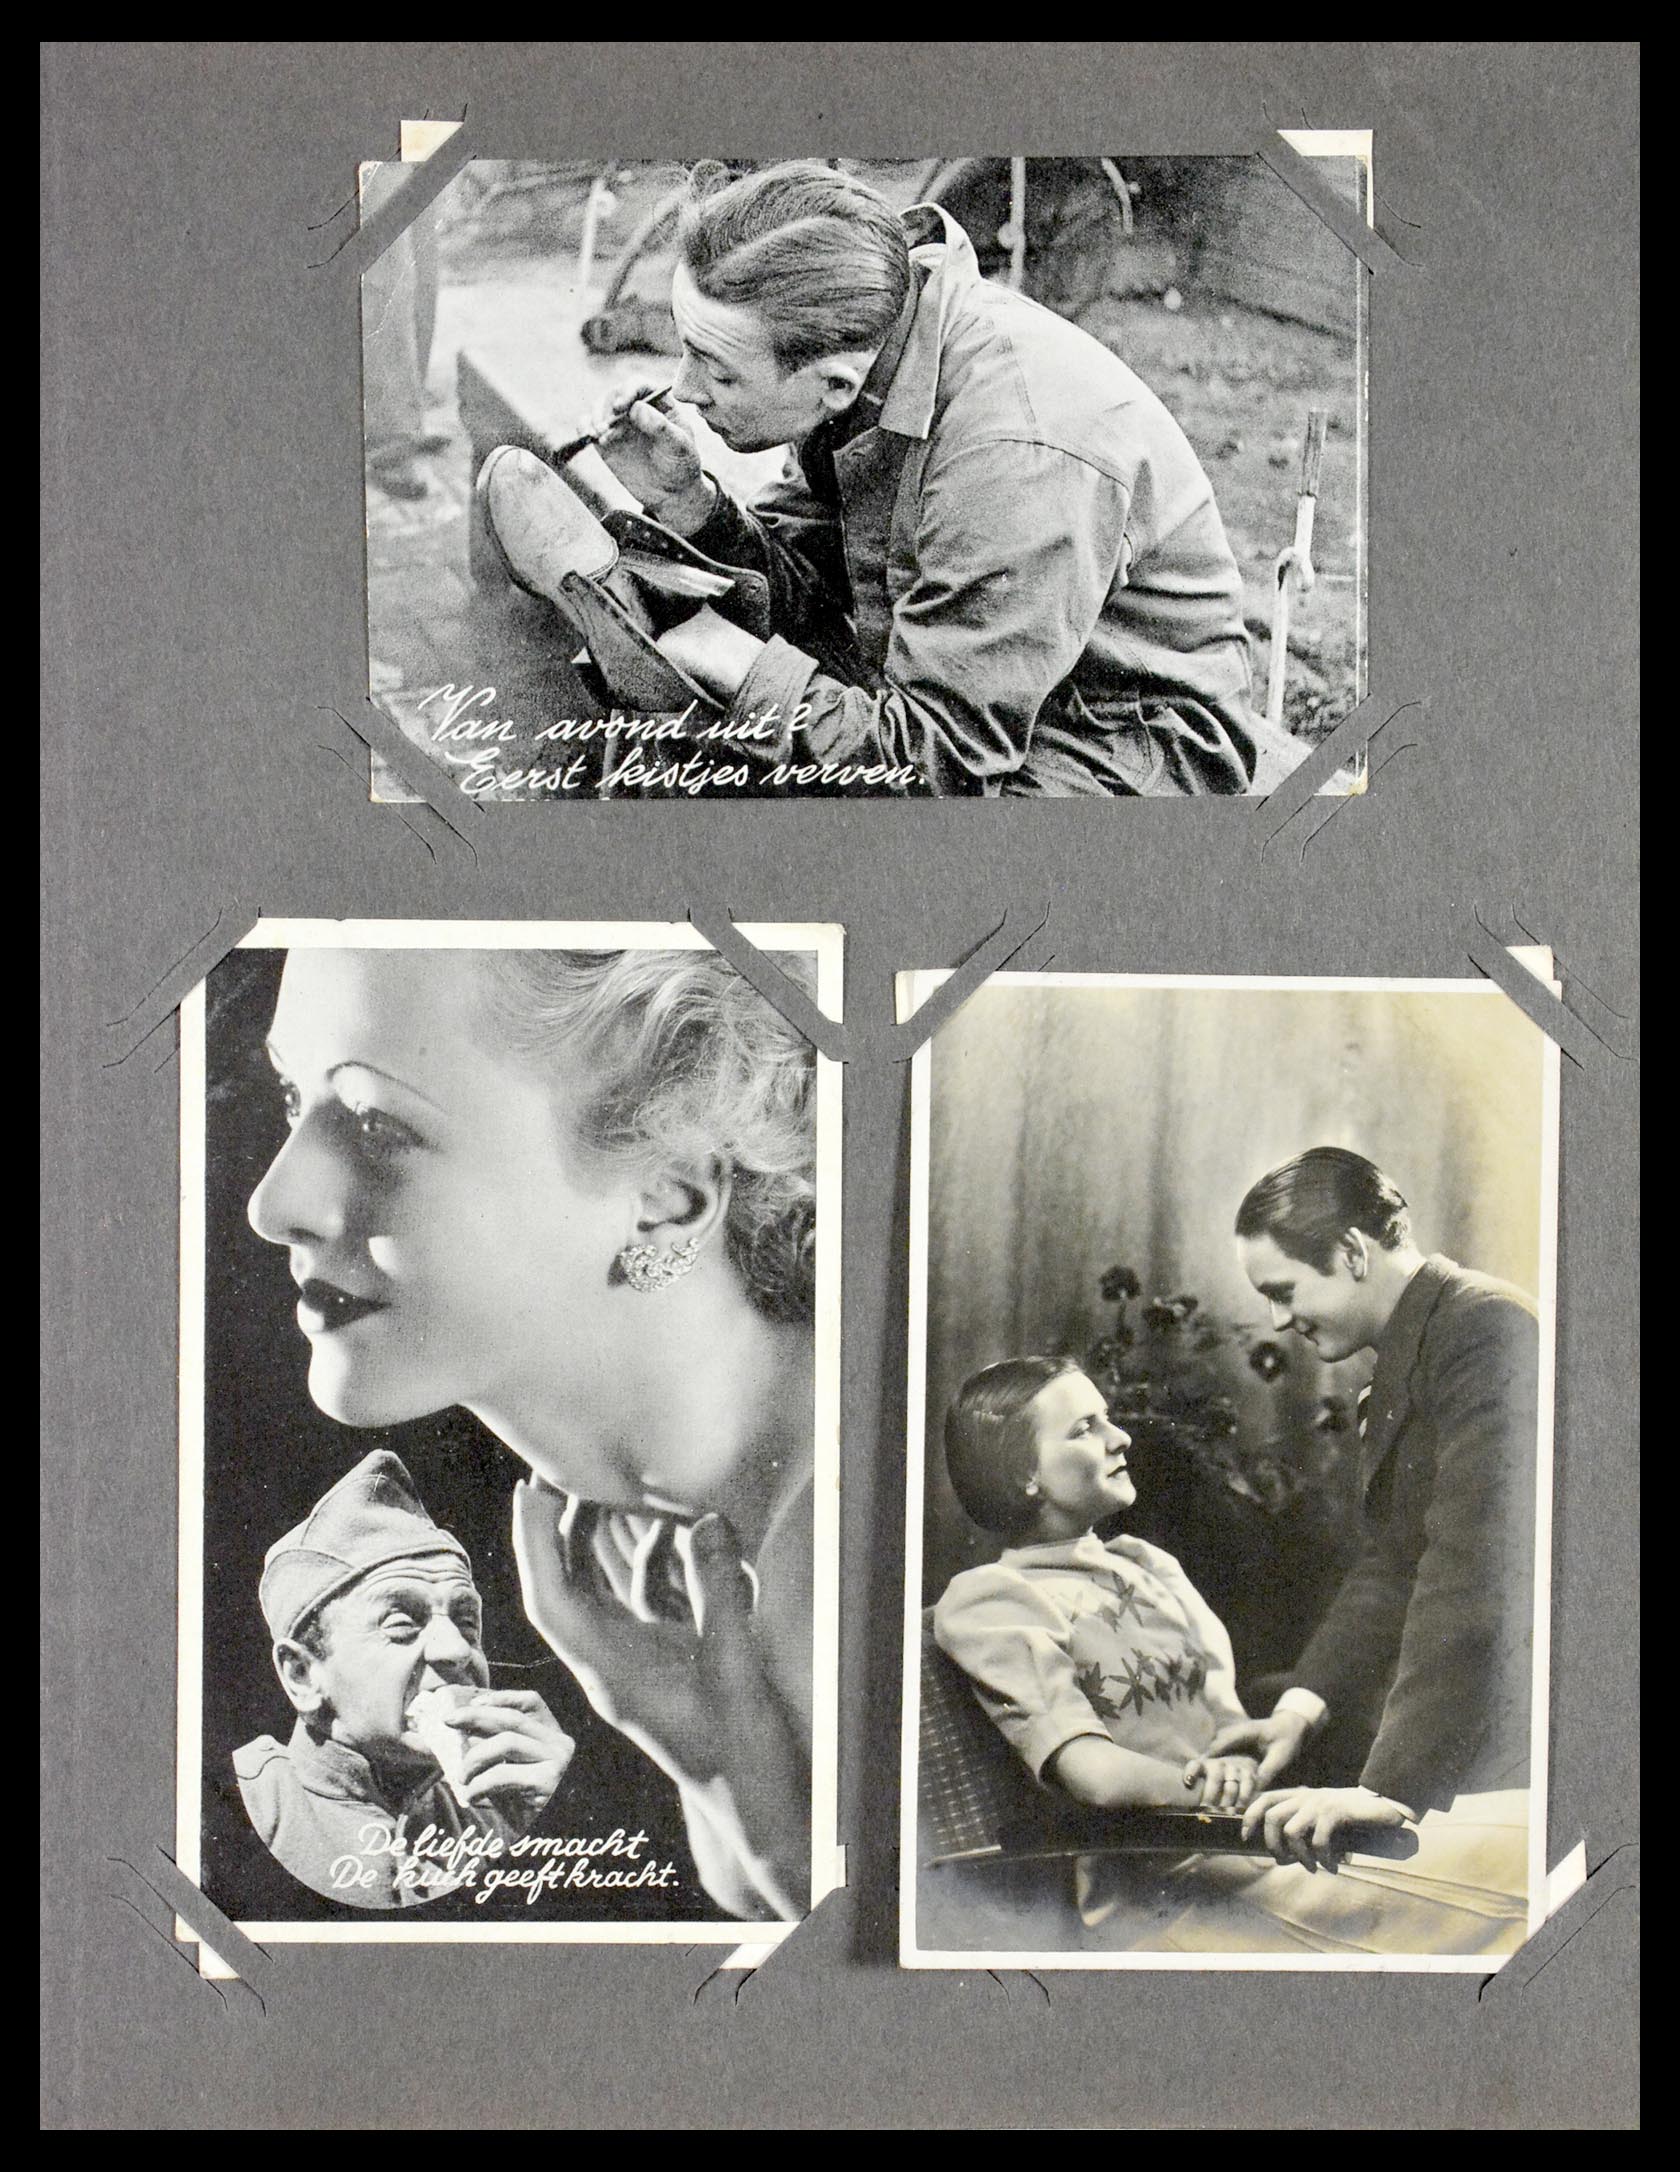 29518 026 - 29518 Nederland ansichtkaarten 1939-1940.